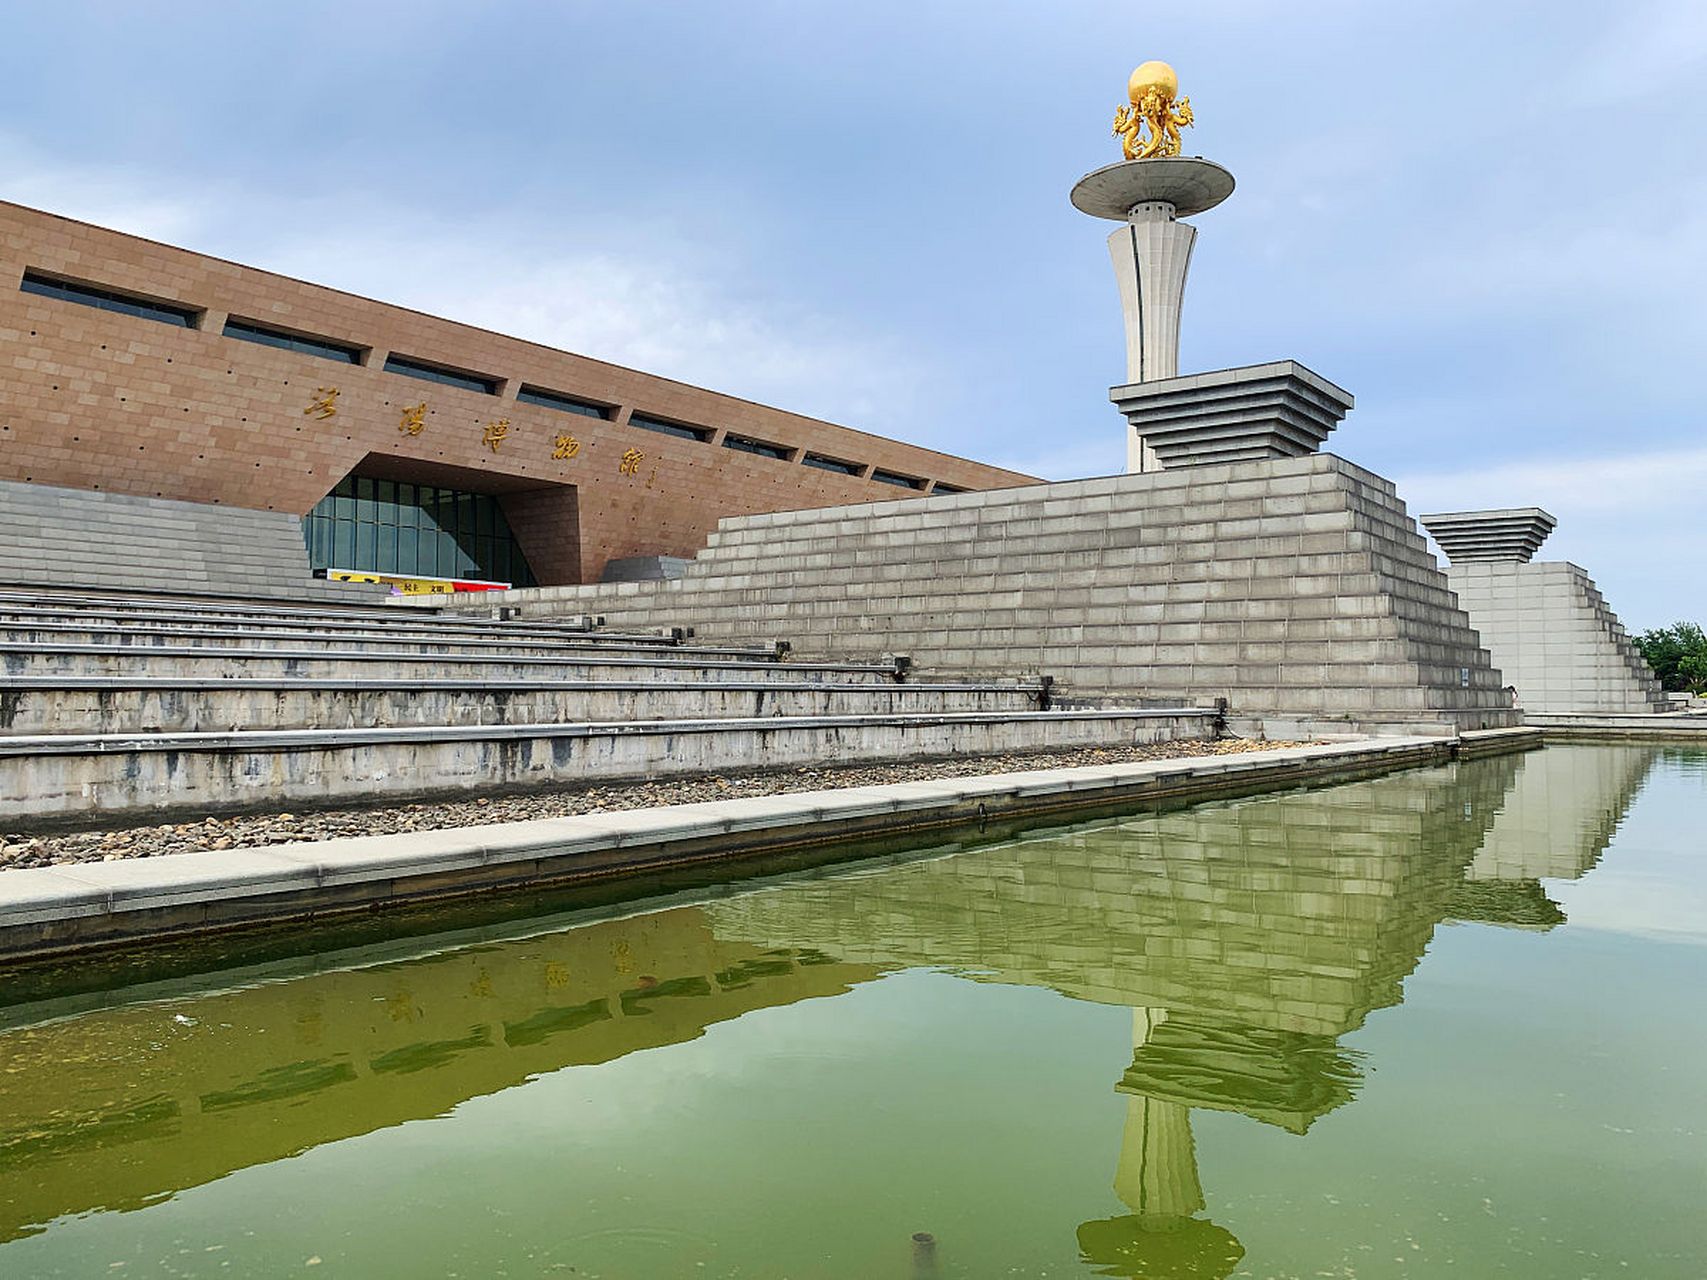 洛阳博物馆是位于中国河南省洛阳市的一座综合性博物馆,成立于1958年